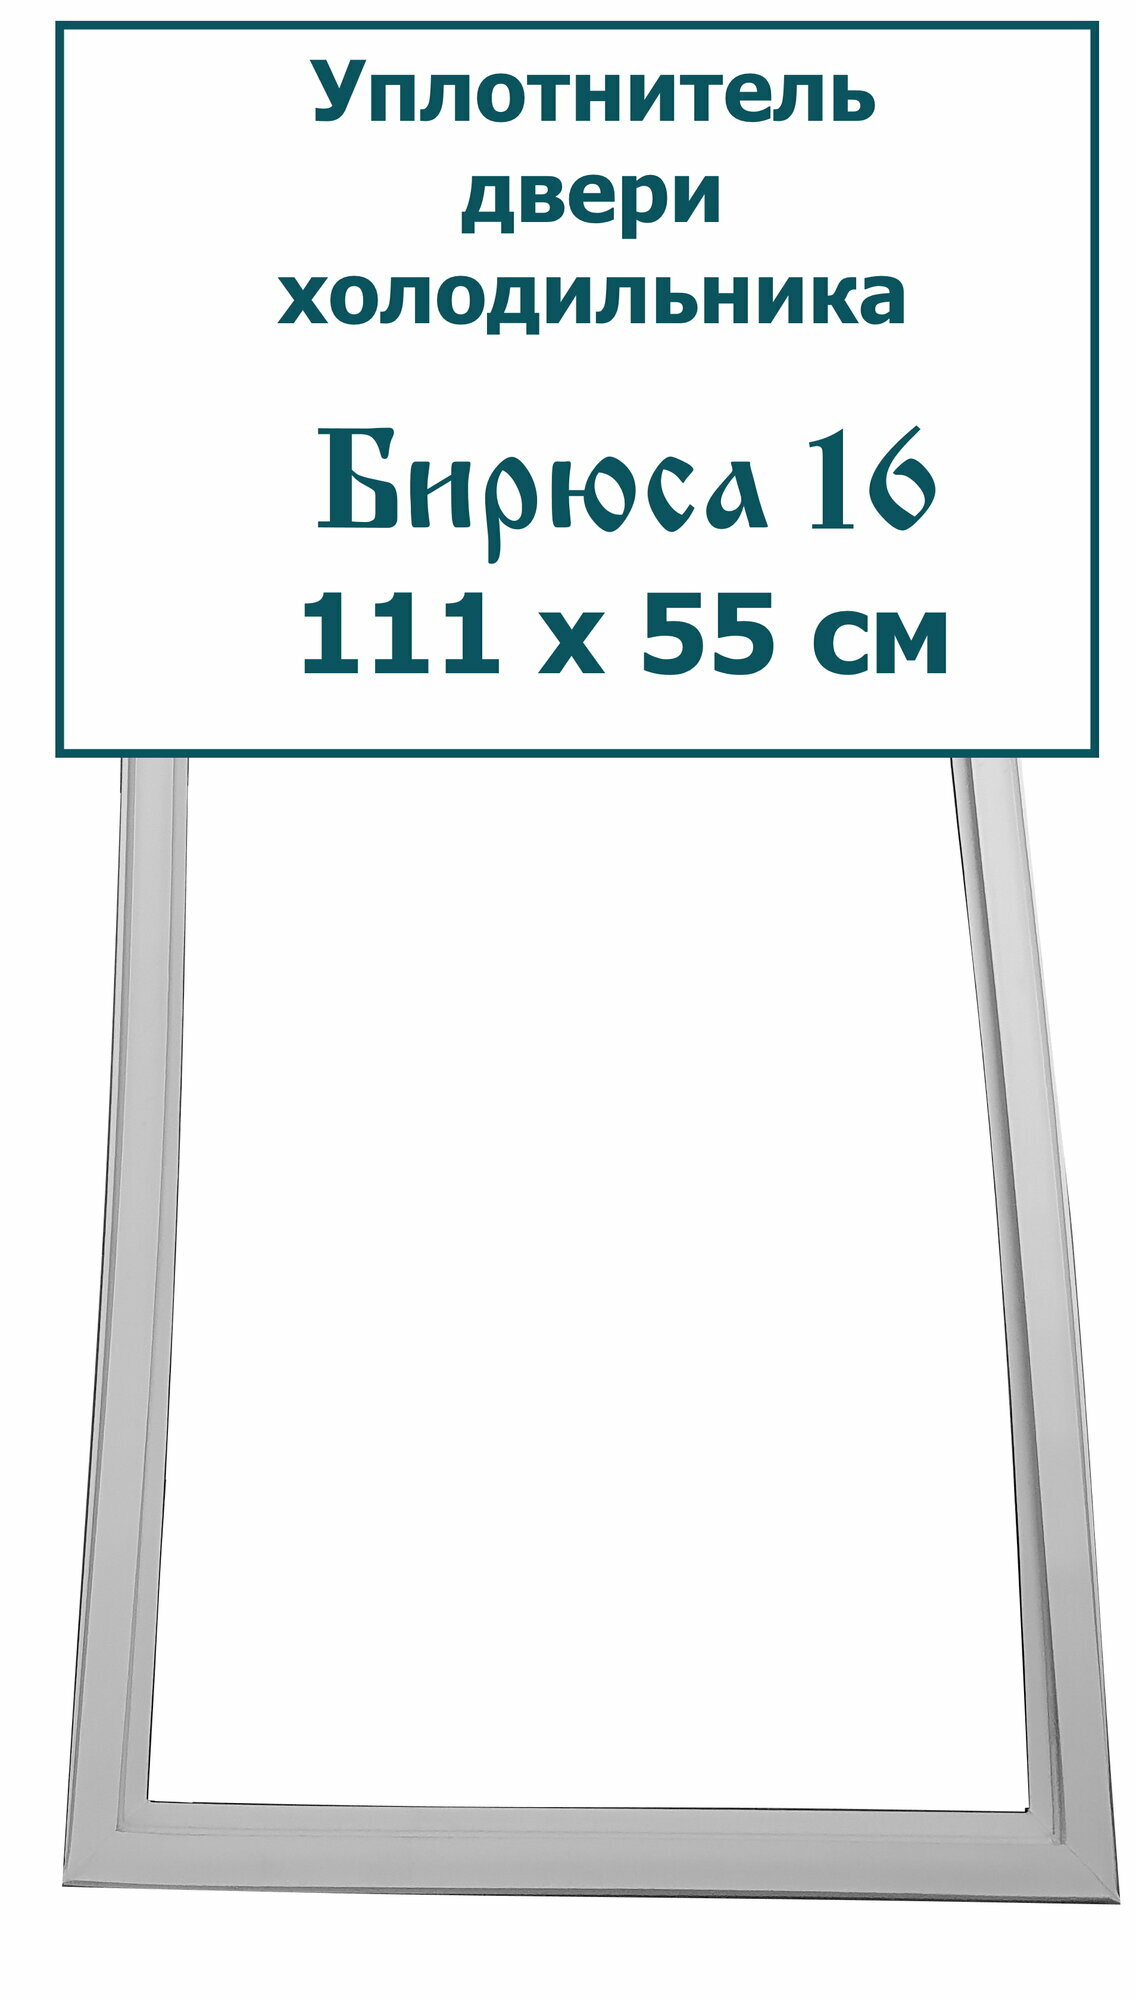 Уплотнитель (резинка) двери холодильника Бирюса 16, (111 x 55 см (1110 x 550 мм))